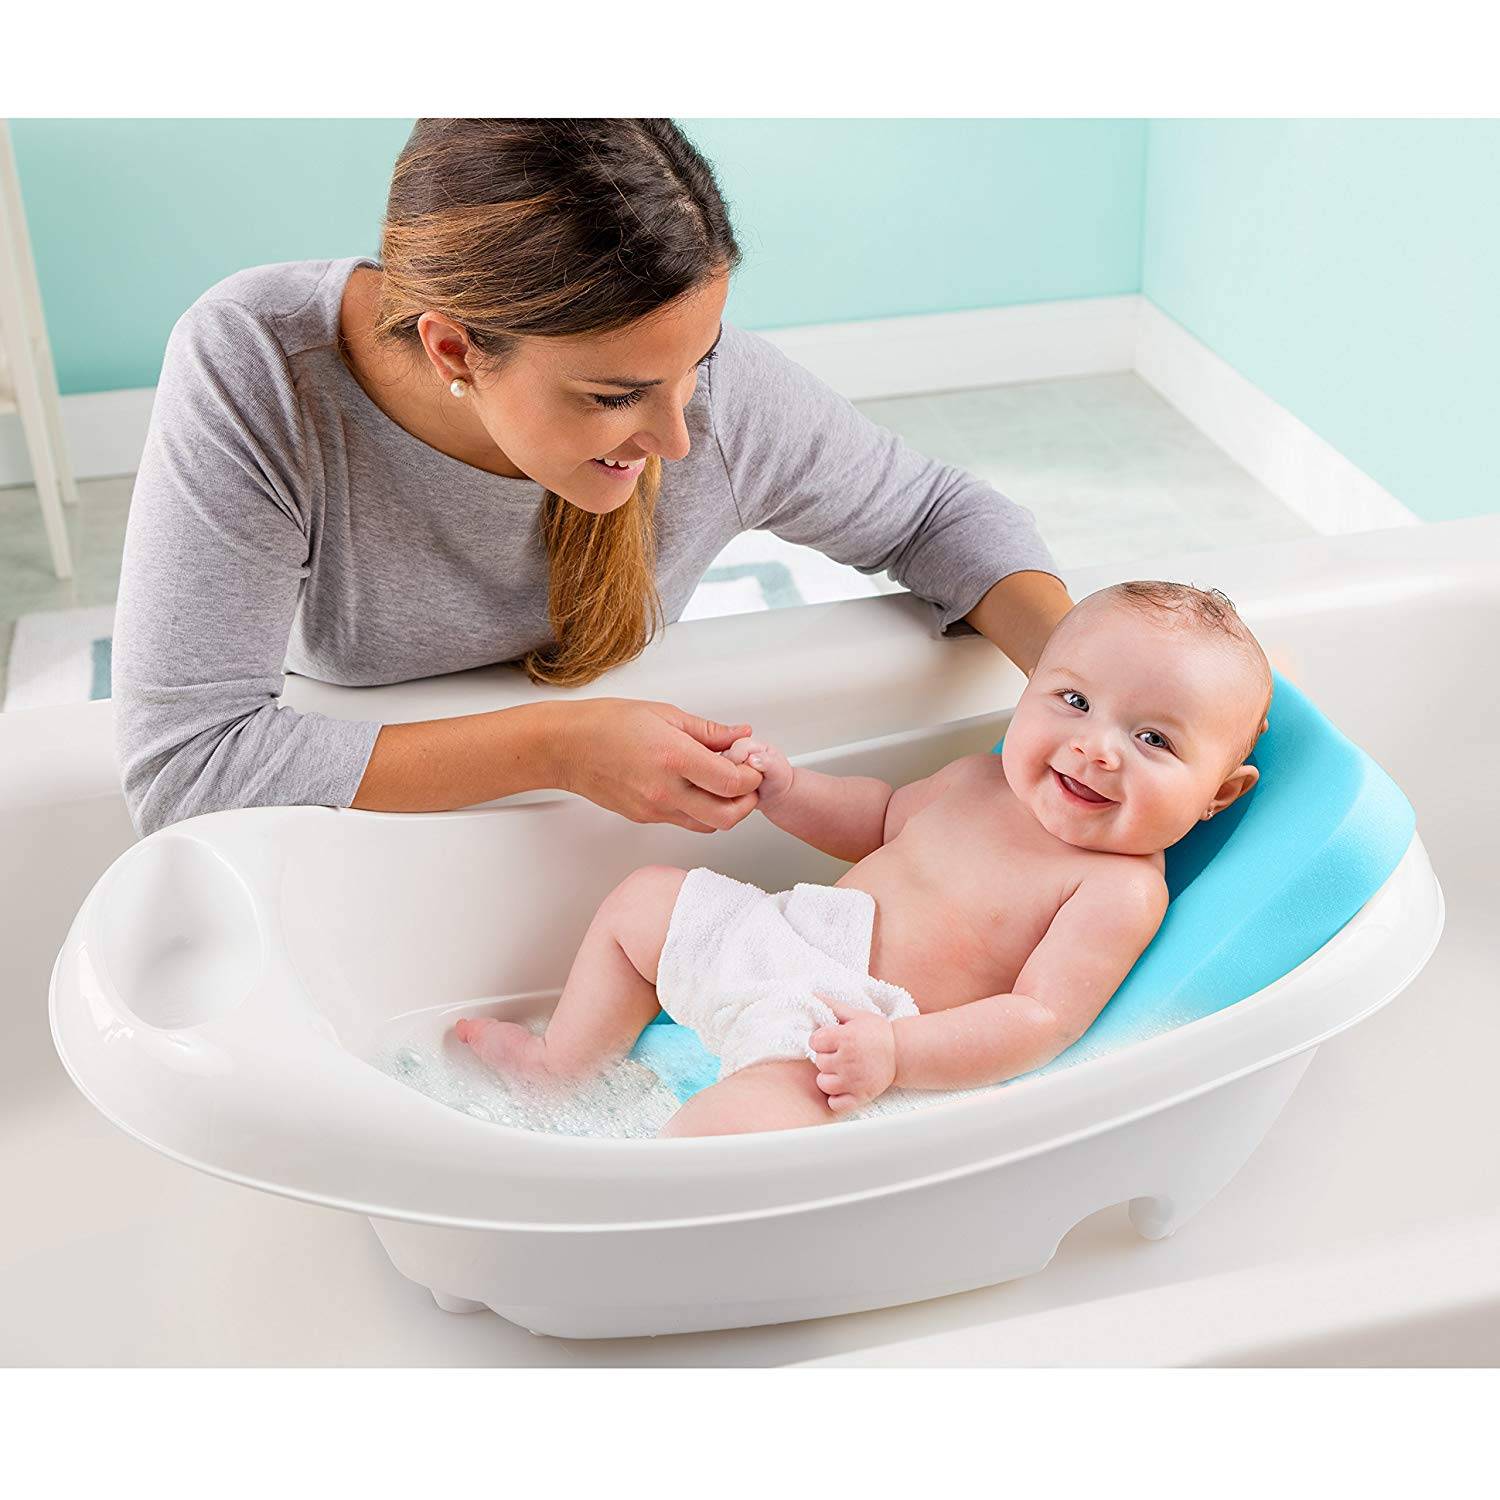 Младенец в ванночке. Детские ванночки для купания новорожденных. Гигиенические ванны для новорожденных. Ребенок купается в ванночке. Какую ванночку купить